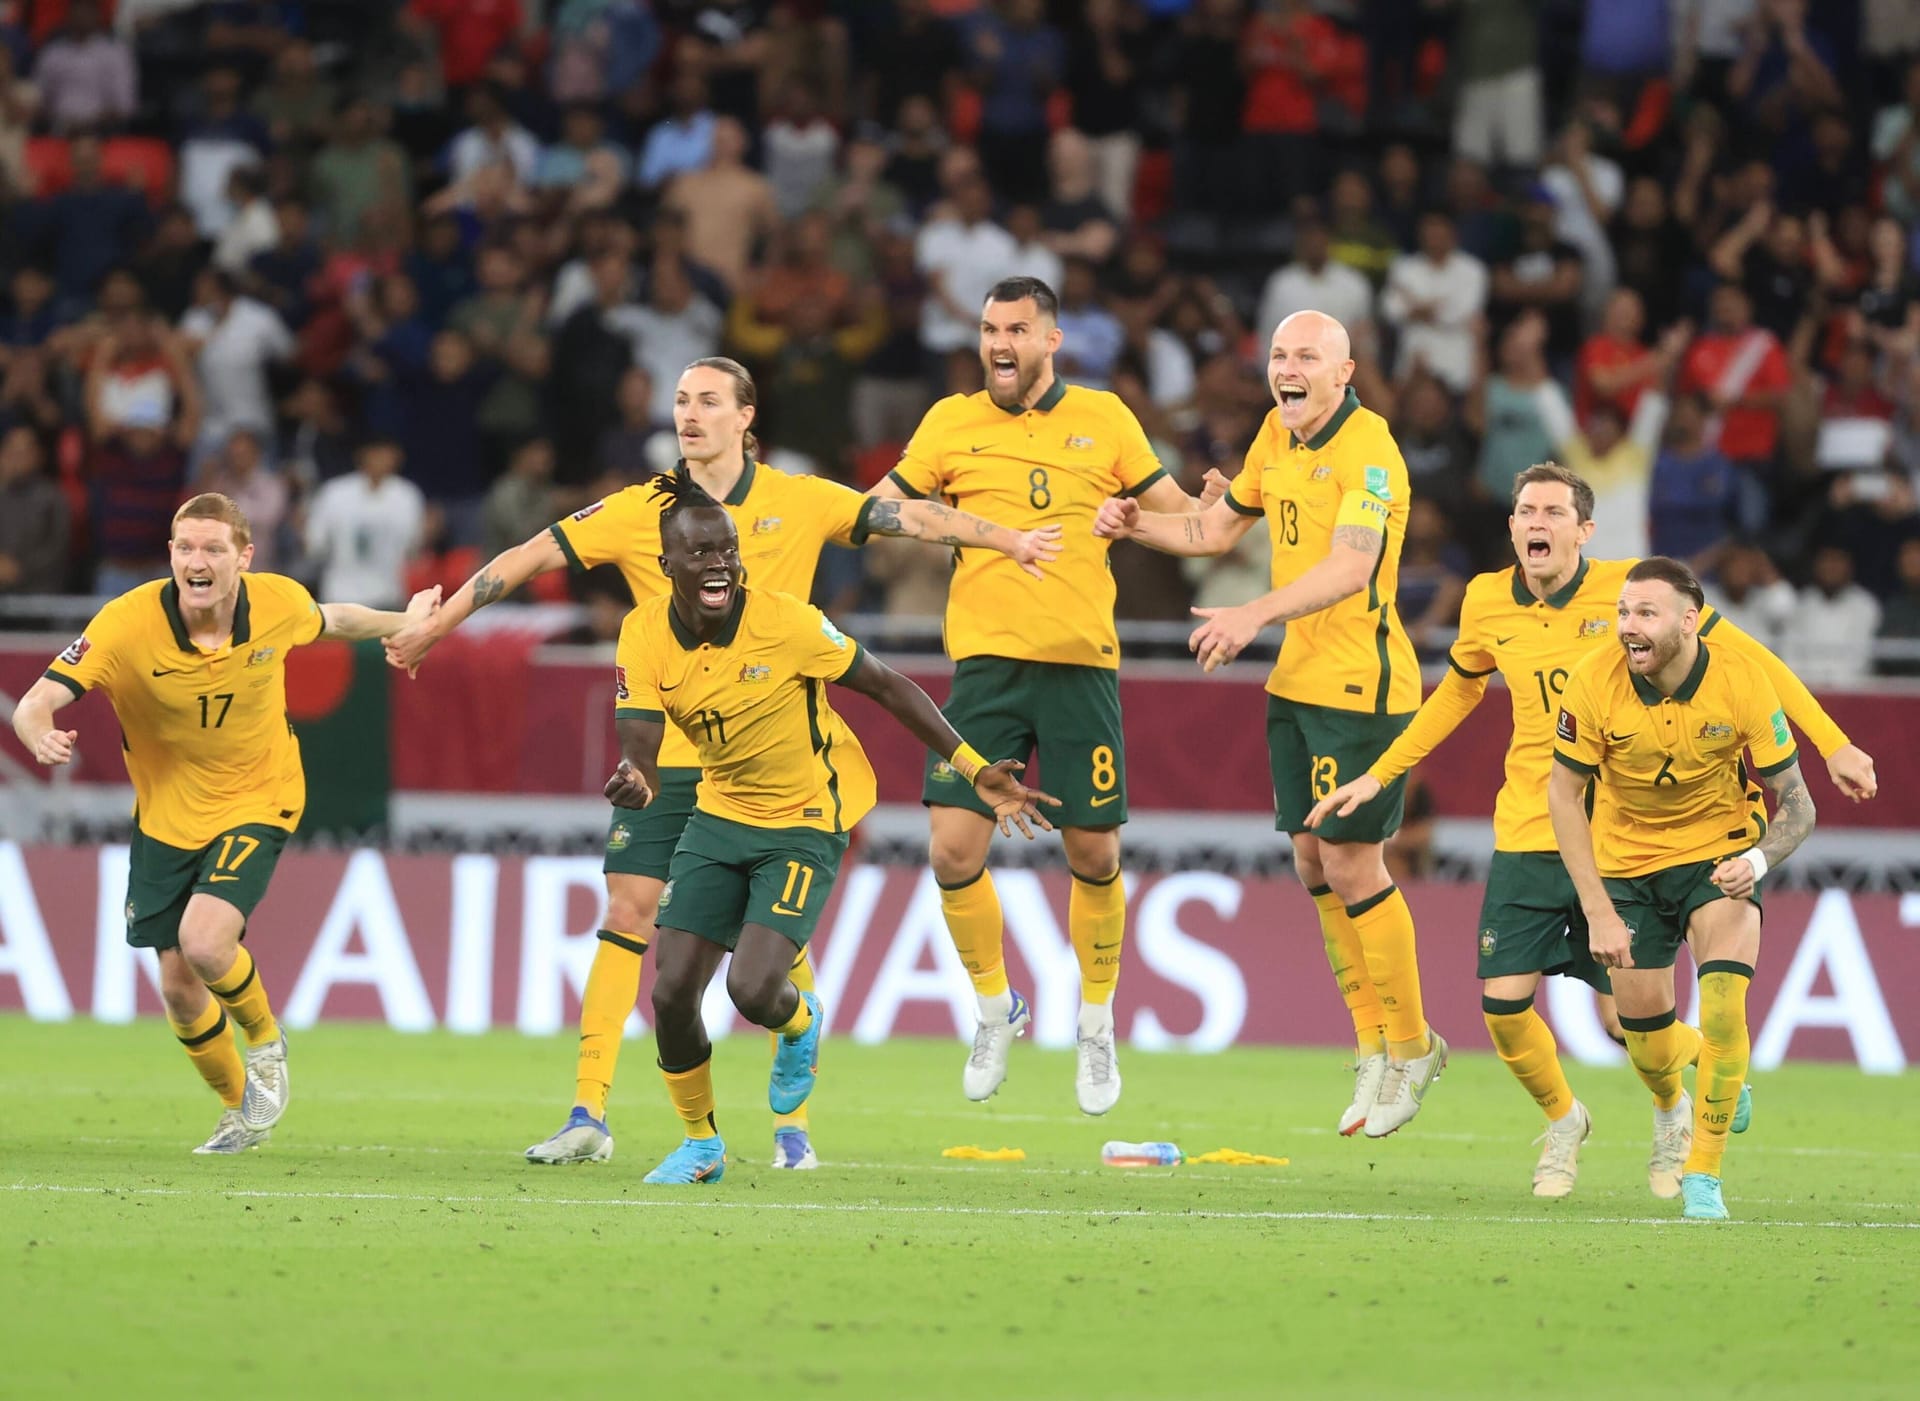 Australien: Maximal dramatisch haben sich die Australier für die Weltmeisterschaft qualifiziert. Erst im Elfmeterschießen setzten sich die "Socceroos" gegen Peru durch. Die Australier sind Stammgast bei Endrunden, verpassten letztmals das Turnier 2002. Bei den letzten beiden Turnieren (2014, 2018) schieden die Australier aber chancenlos in der Vorrunde aus.